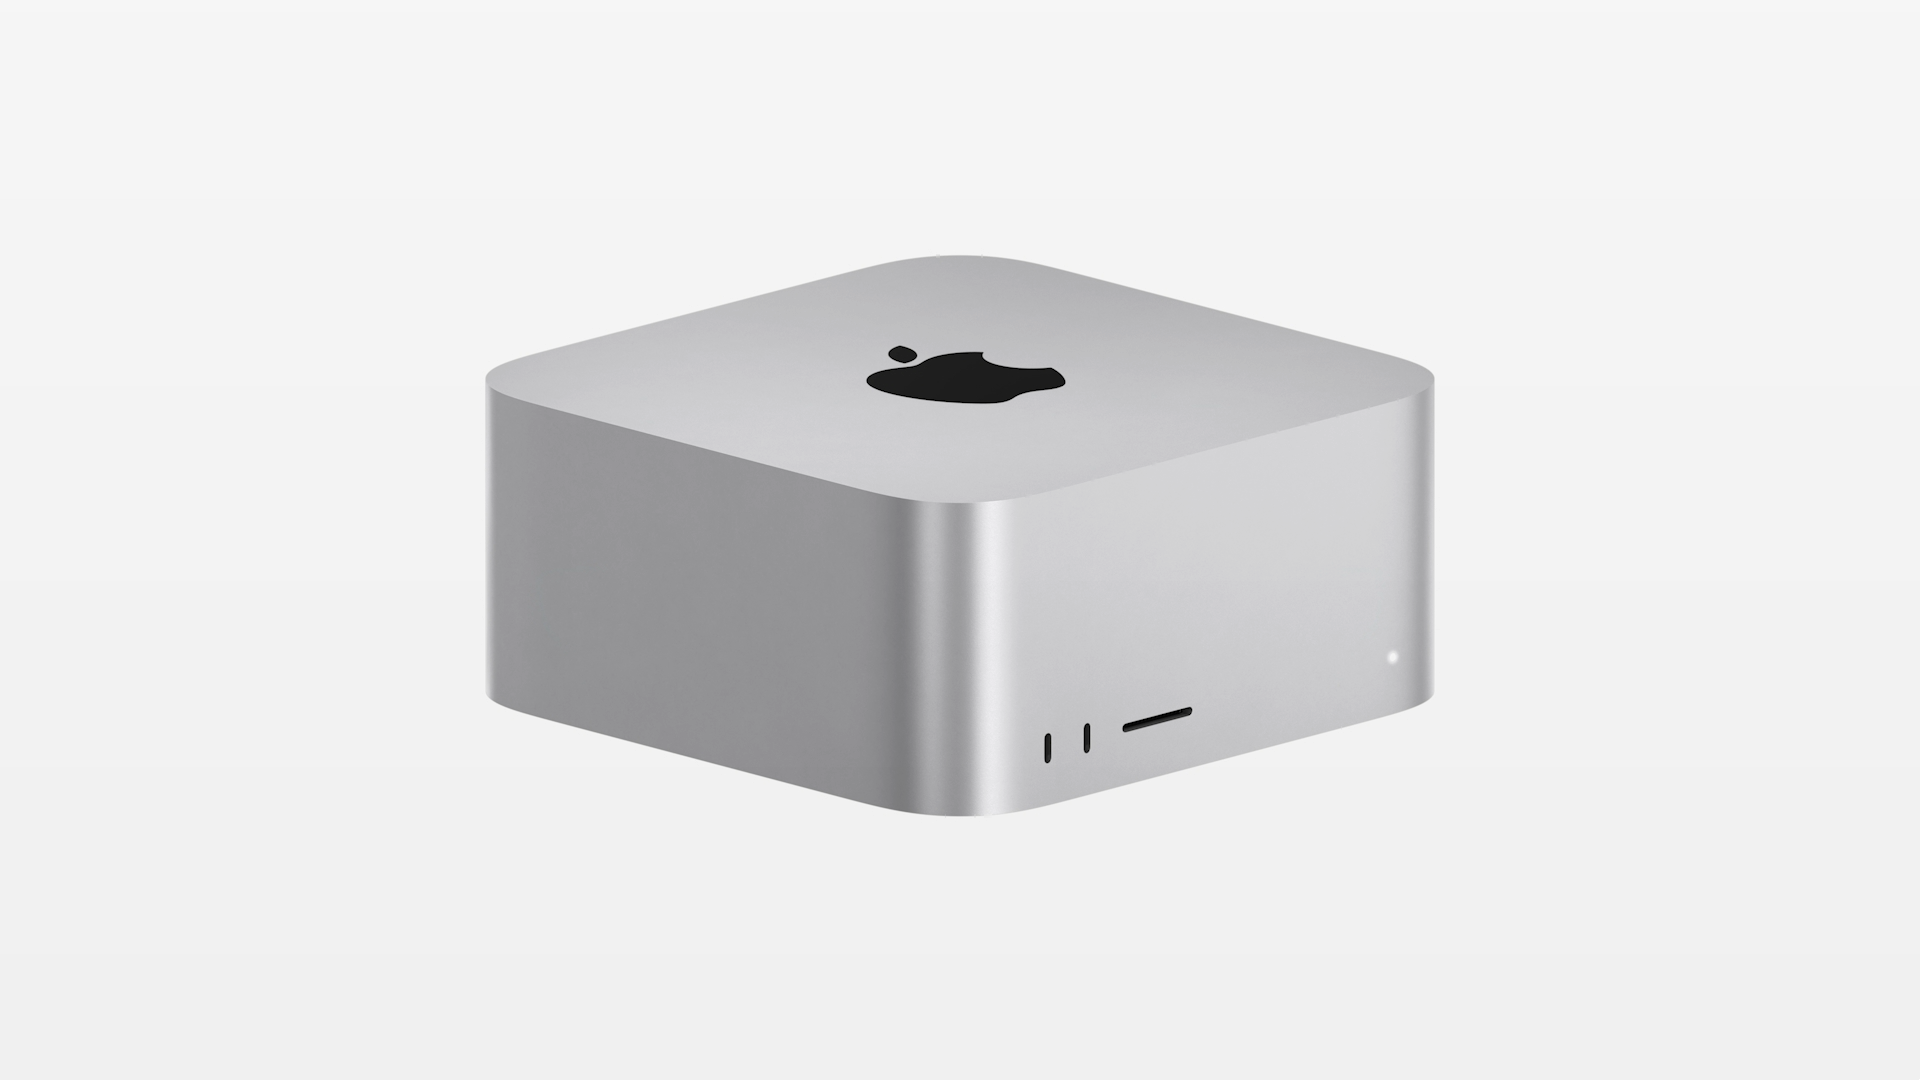 Mac Studio : Apple dévoile son Mac Pro compact ainsi qu'un nouvel écran externe